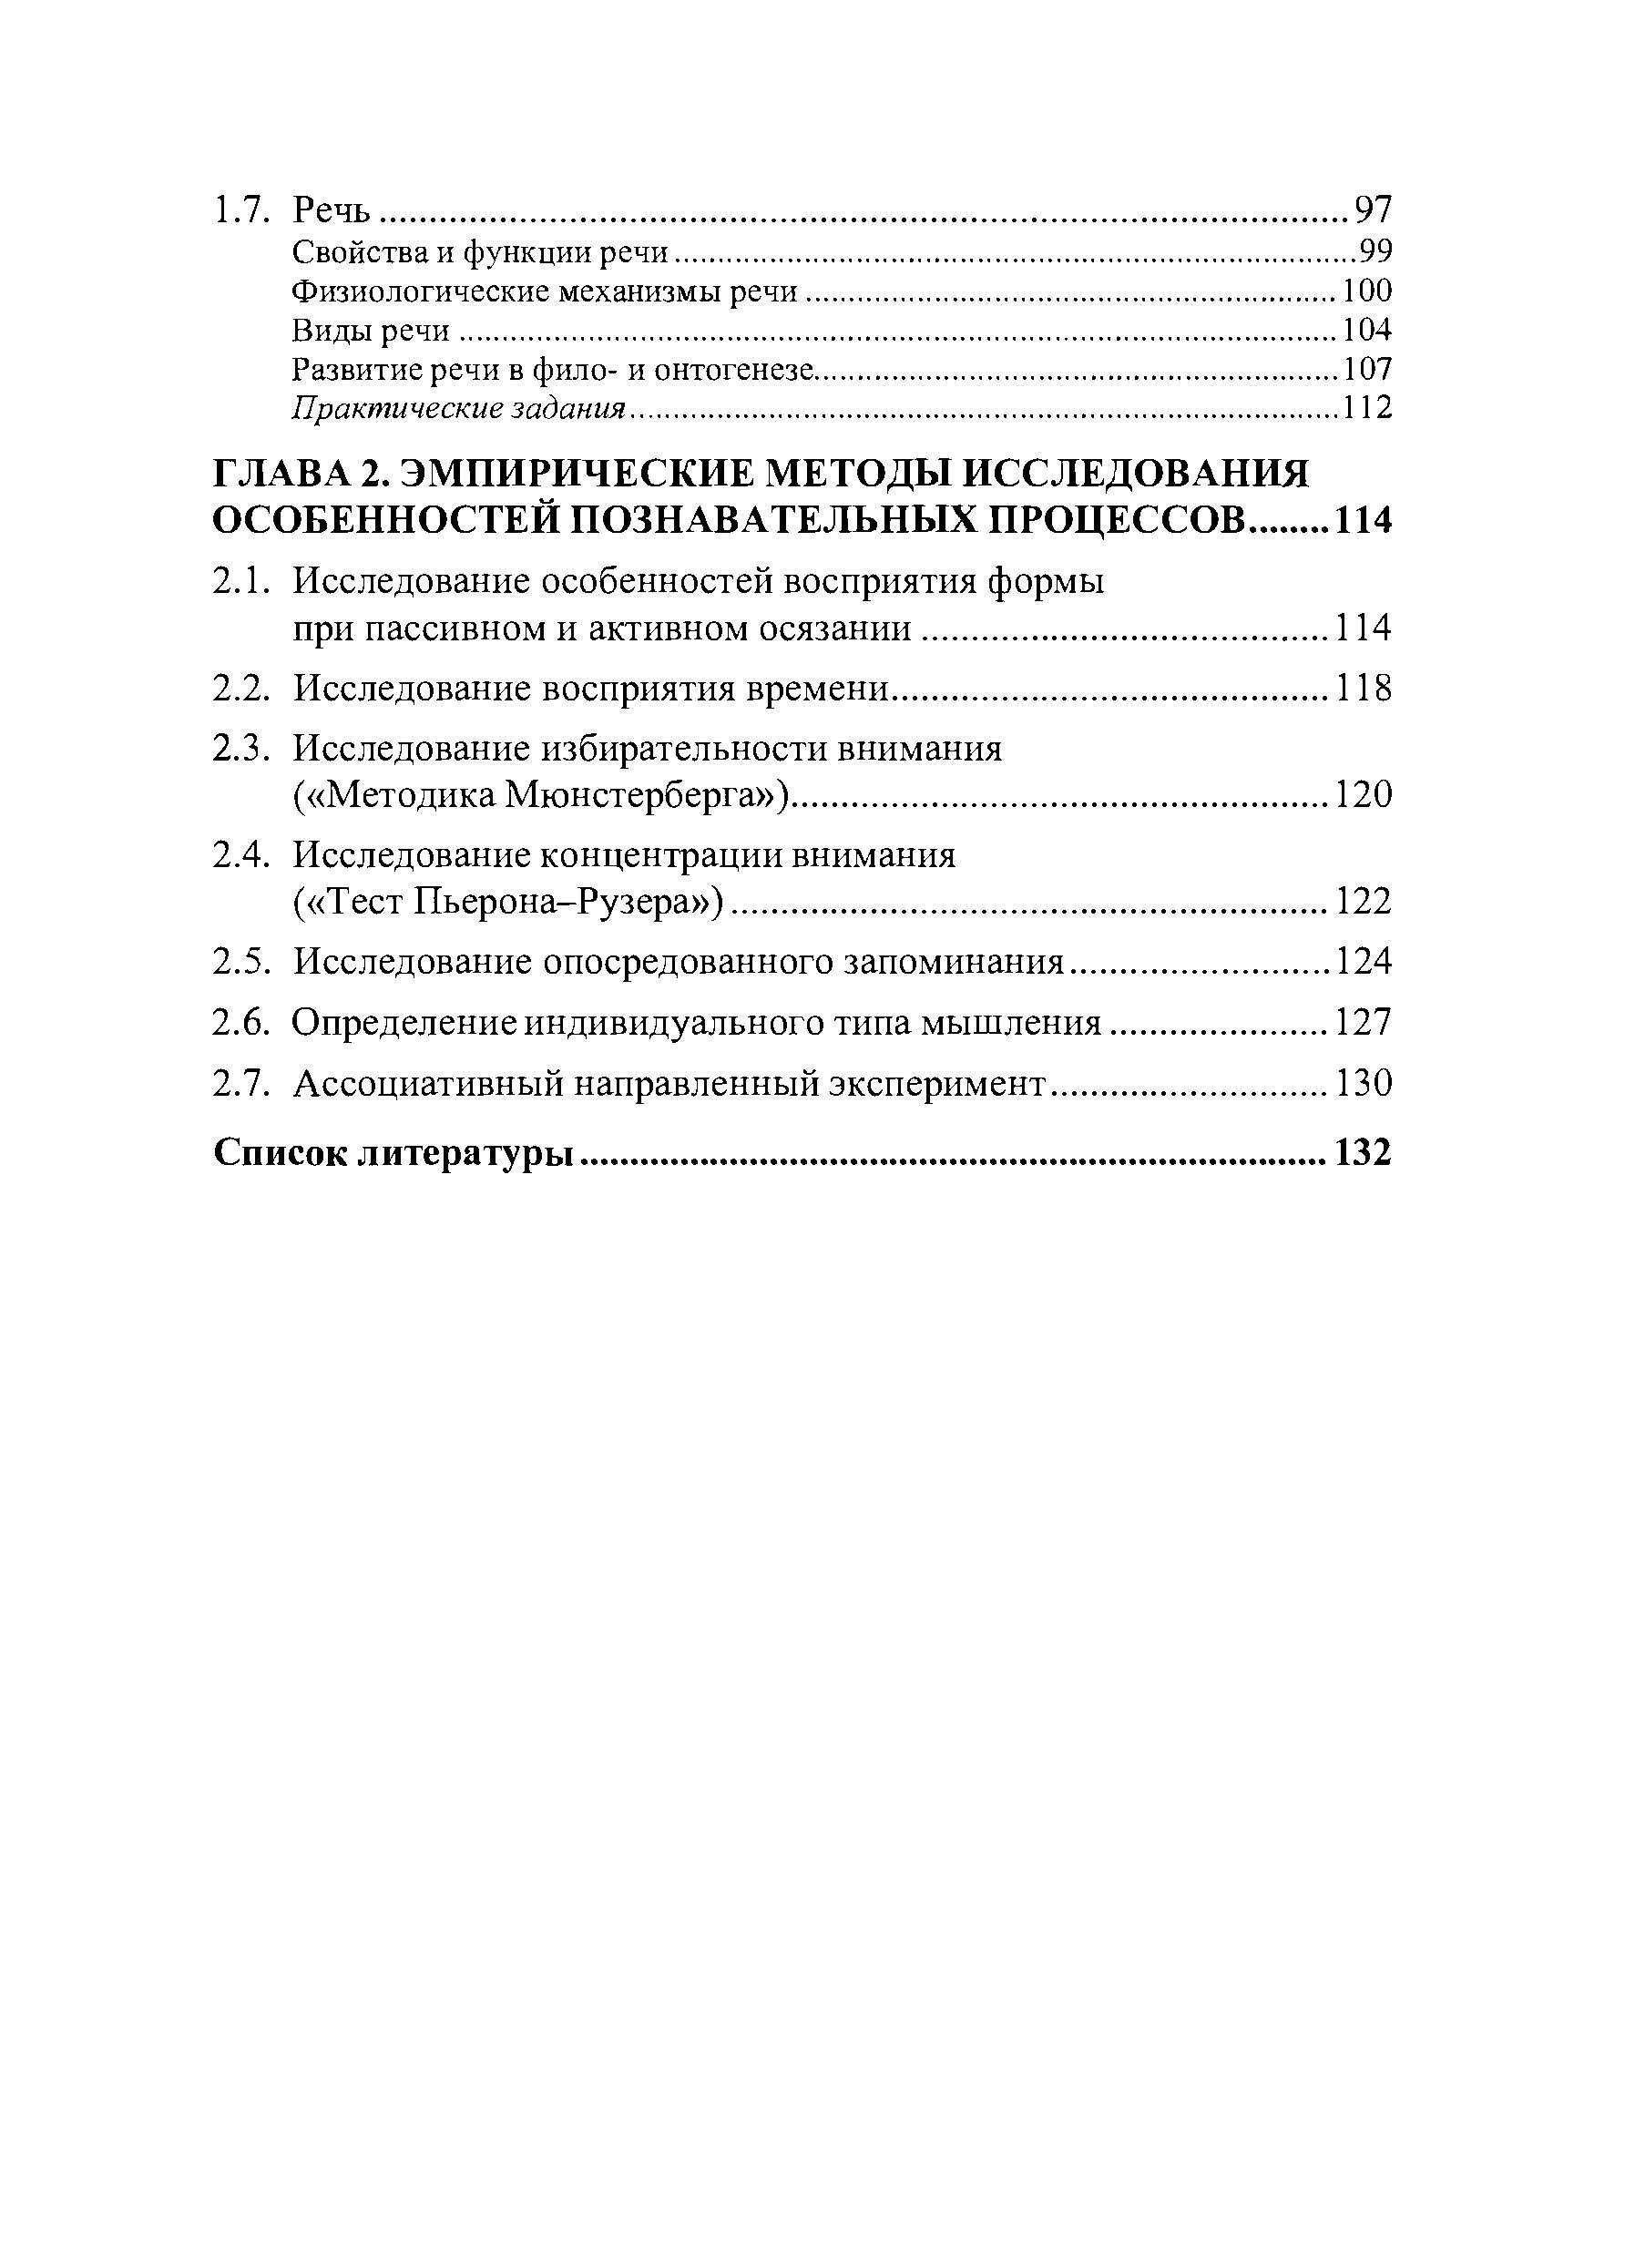 Психология познавательных процессов  (2020 год). Автор — Мирончук М.А.. 